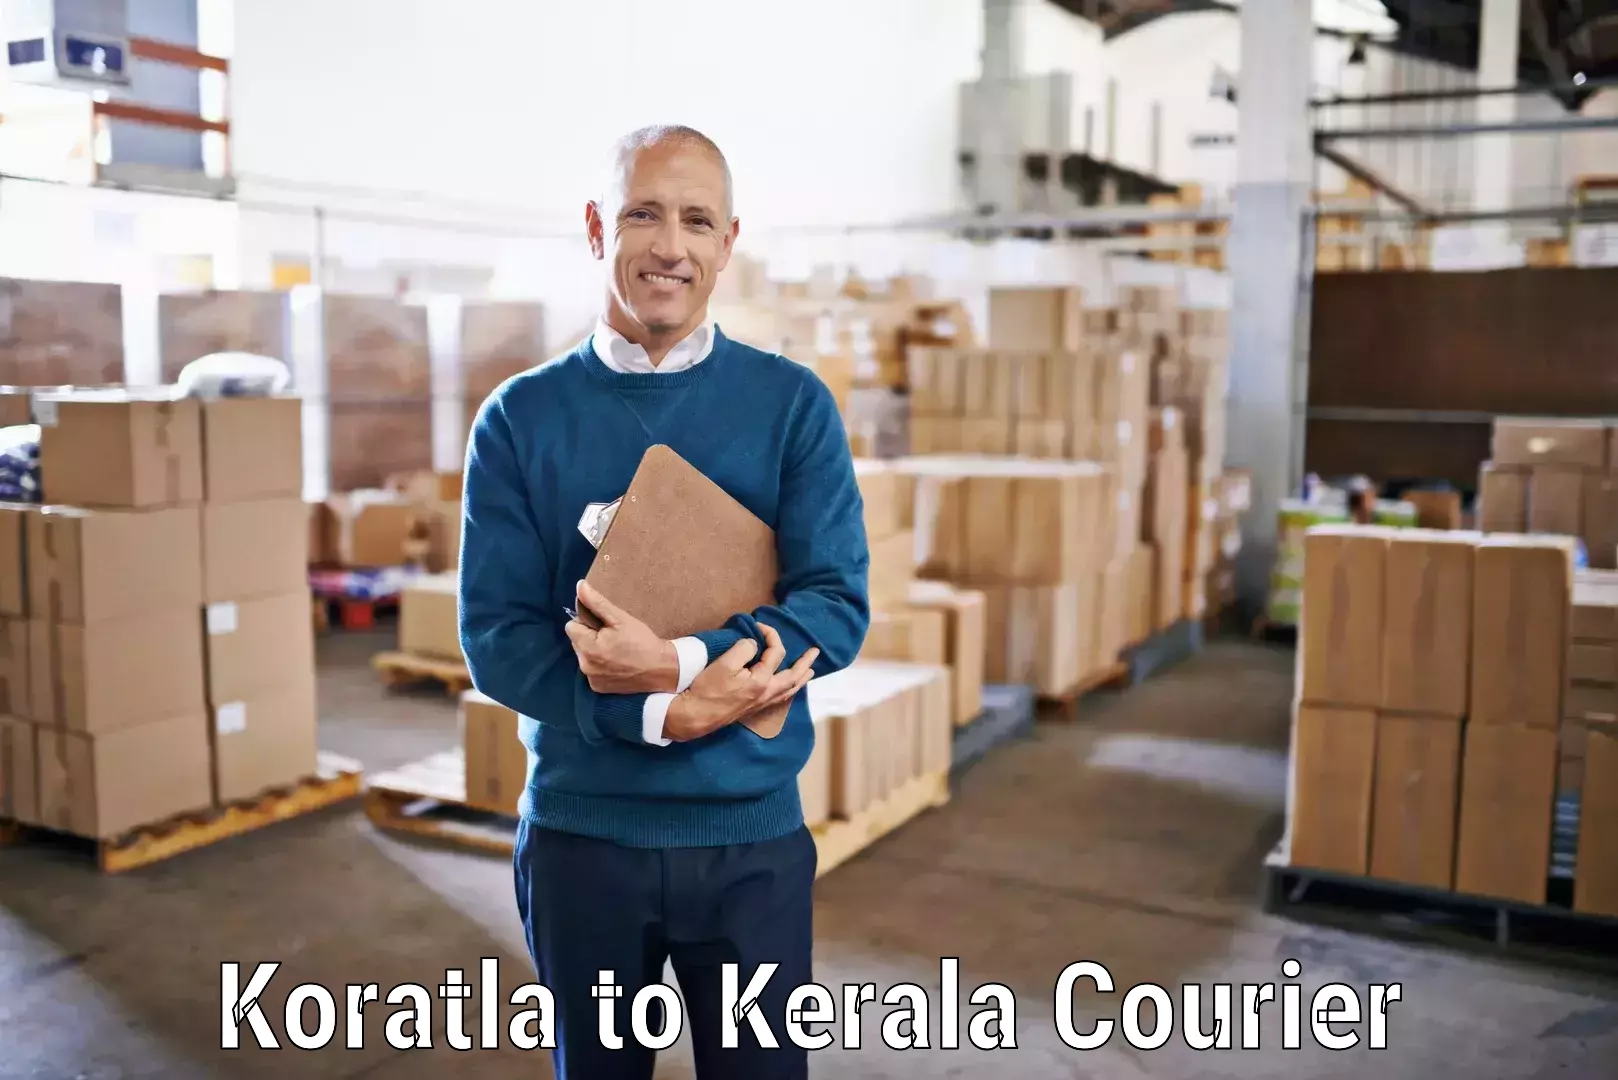 Premium courier services in Koratla to Parippally